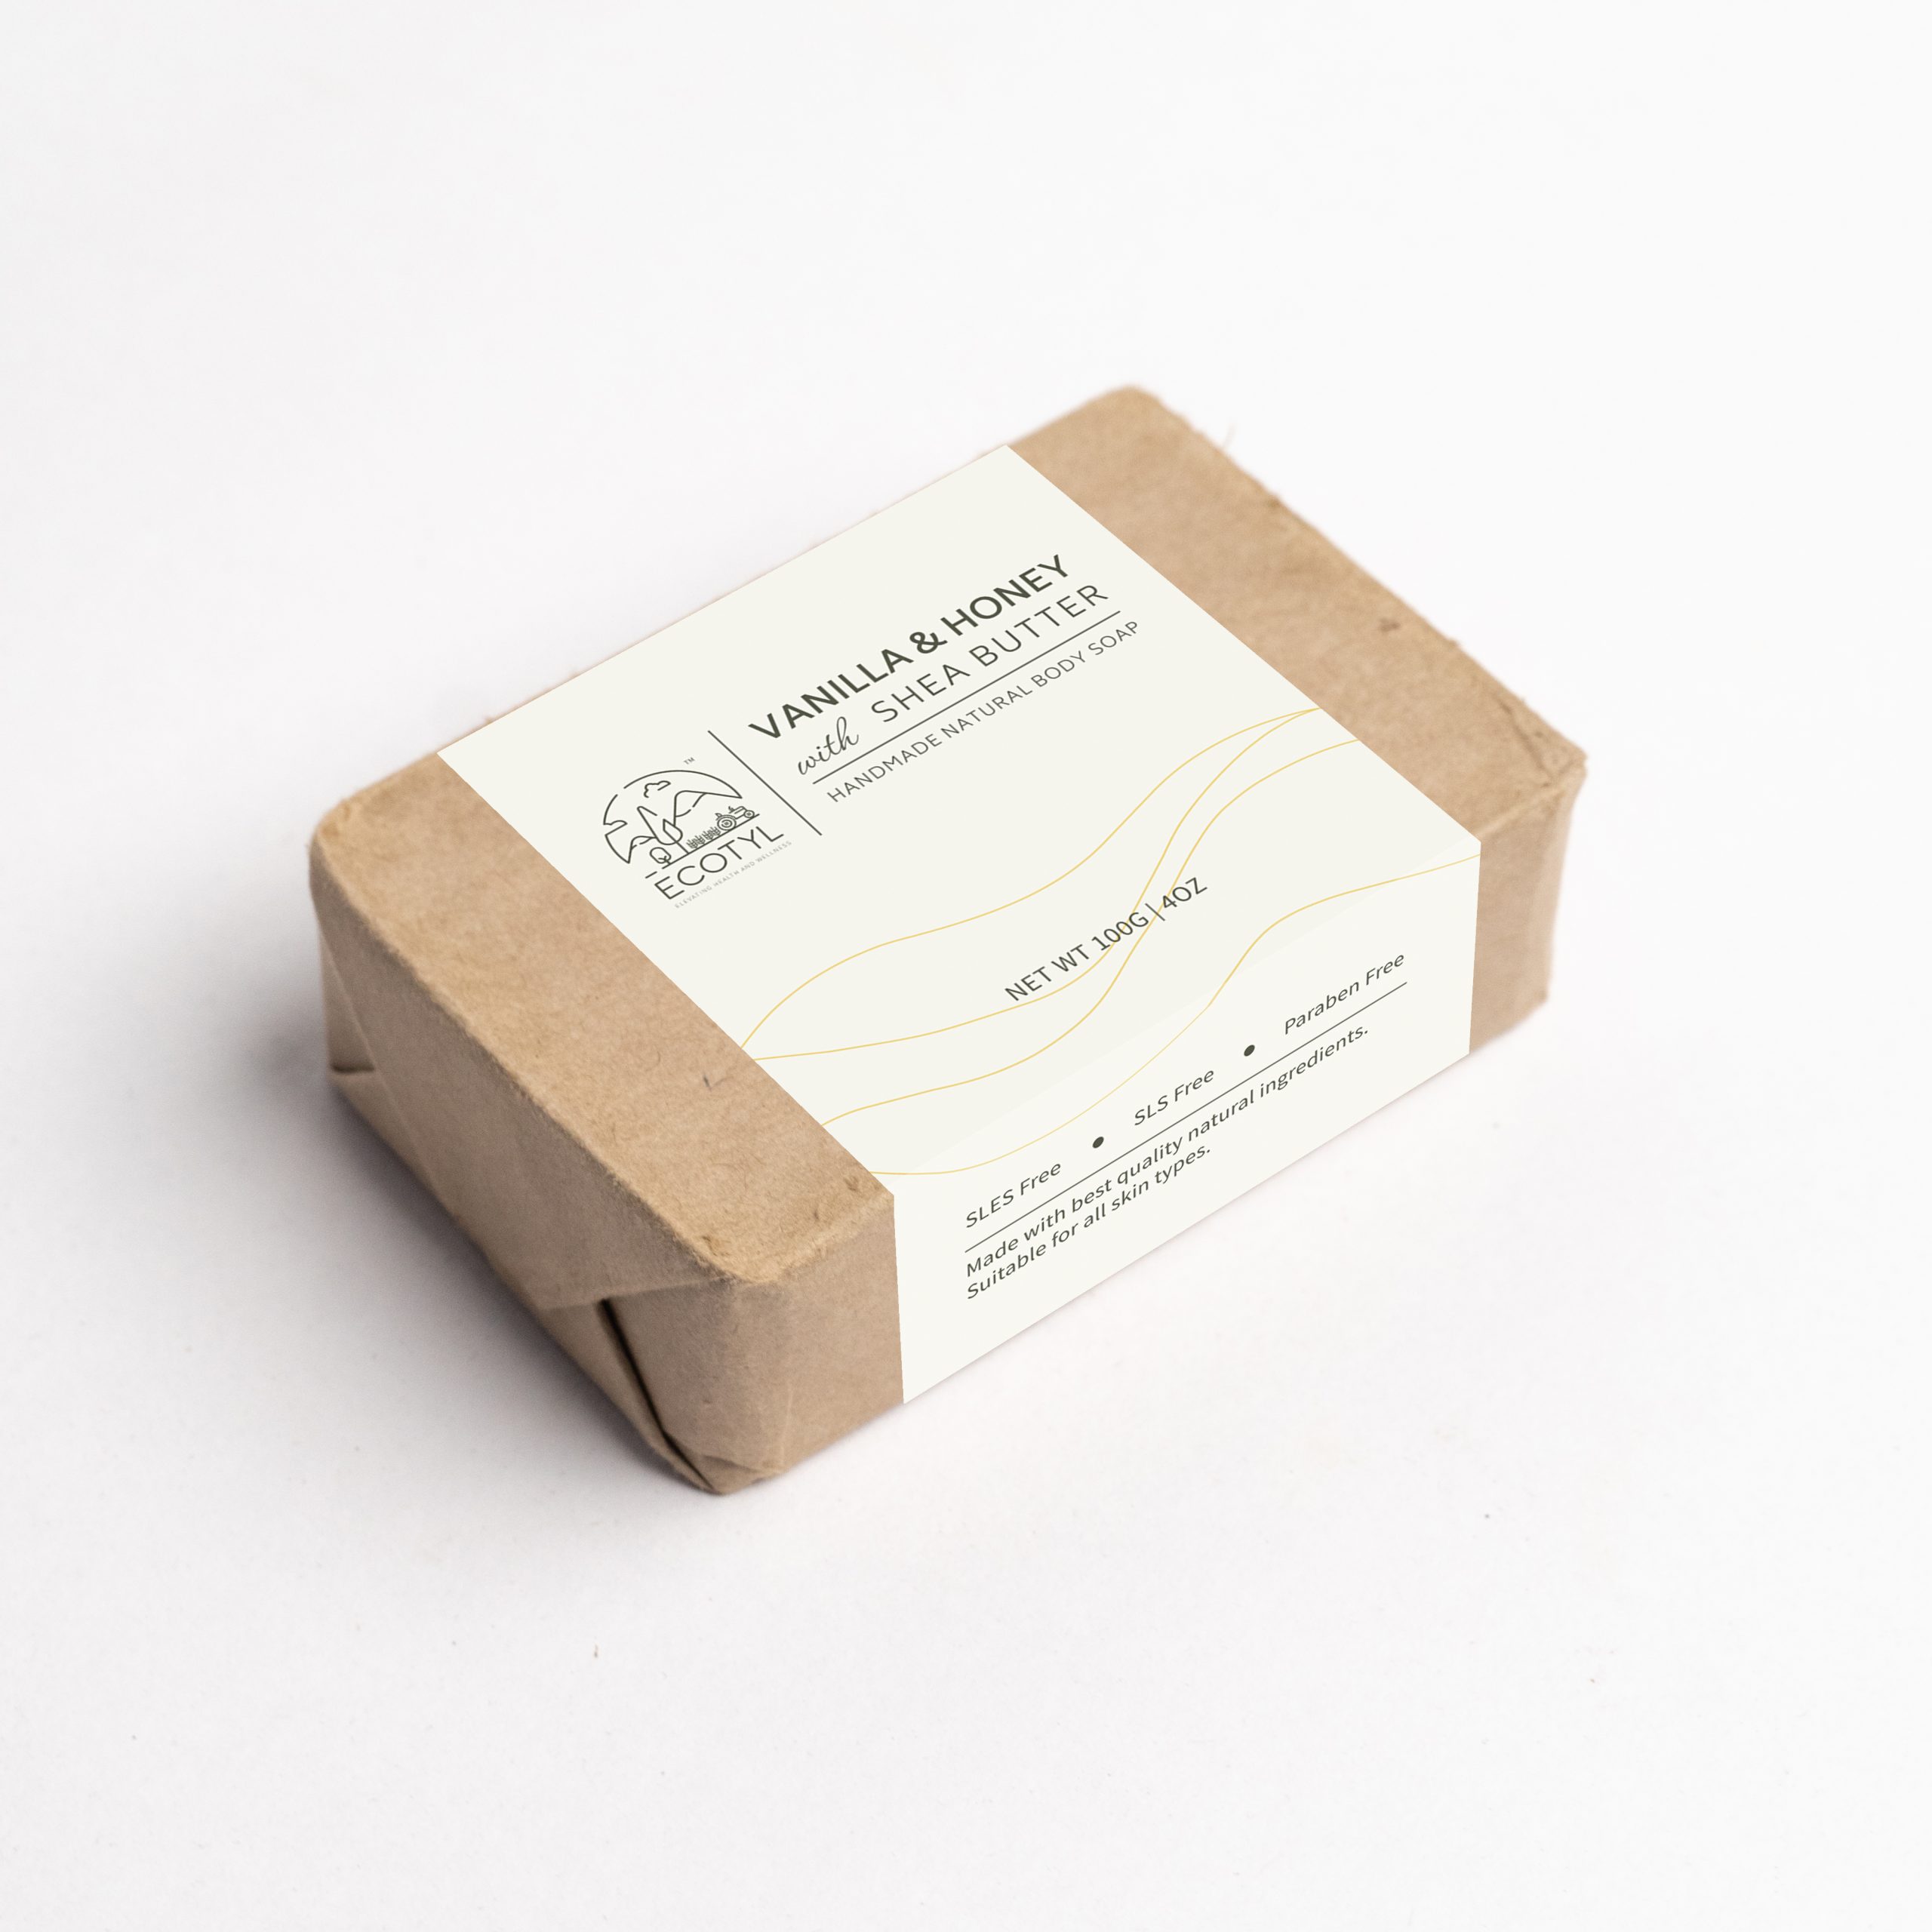 Product: Ecotyl Handmade Body Soap (Shea butter – Honey and Vanilla) – 100 g